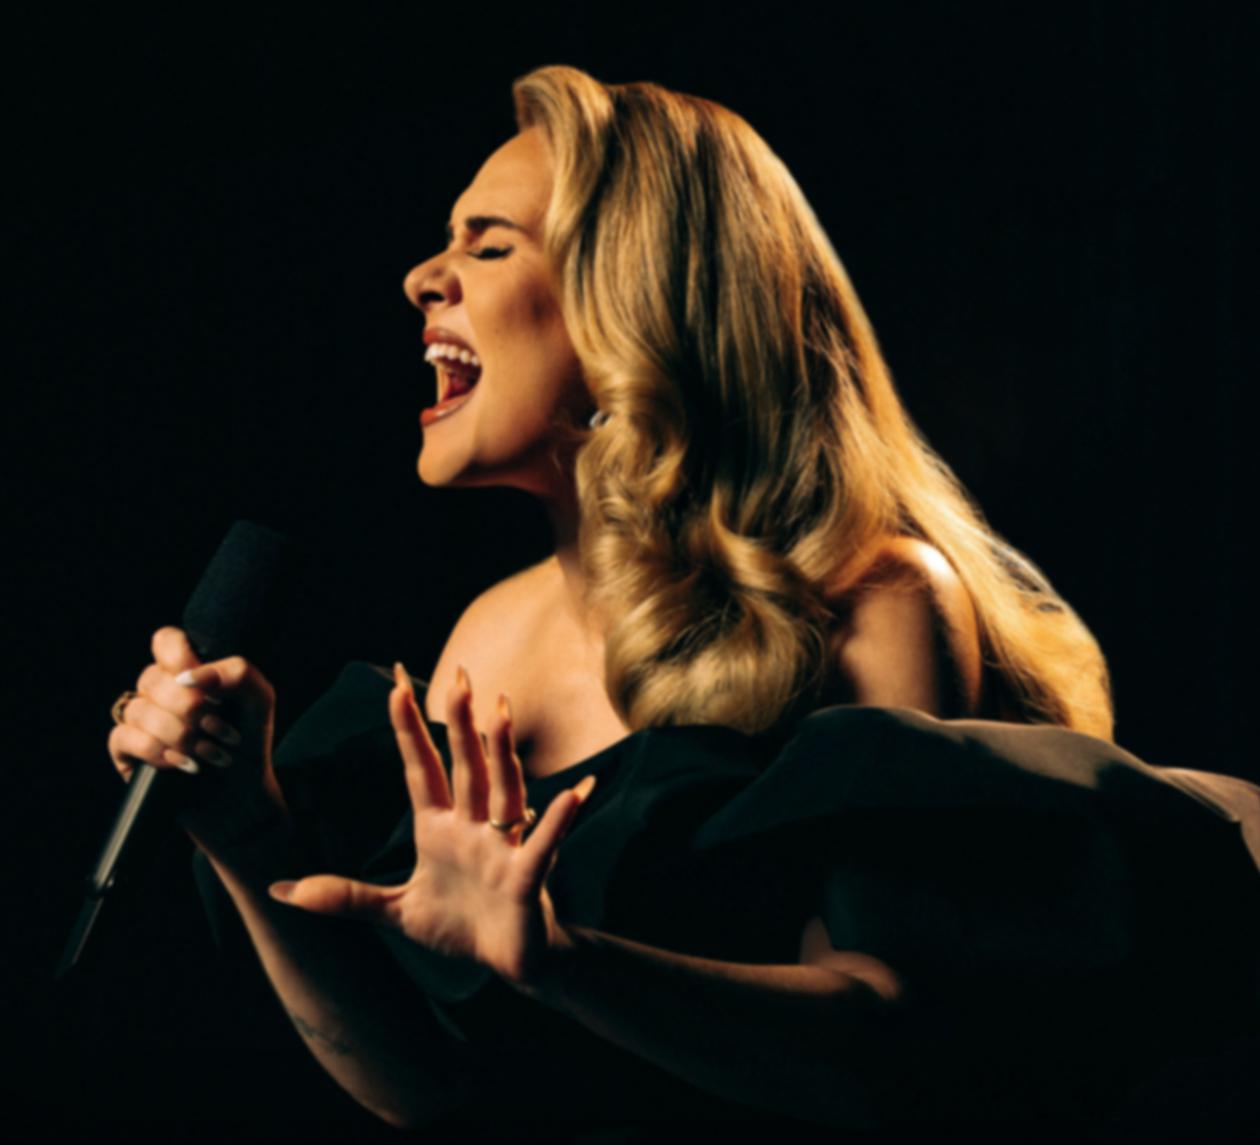 Adele will start her Las Vegas residency on November 18 at the Colosseum.